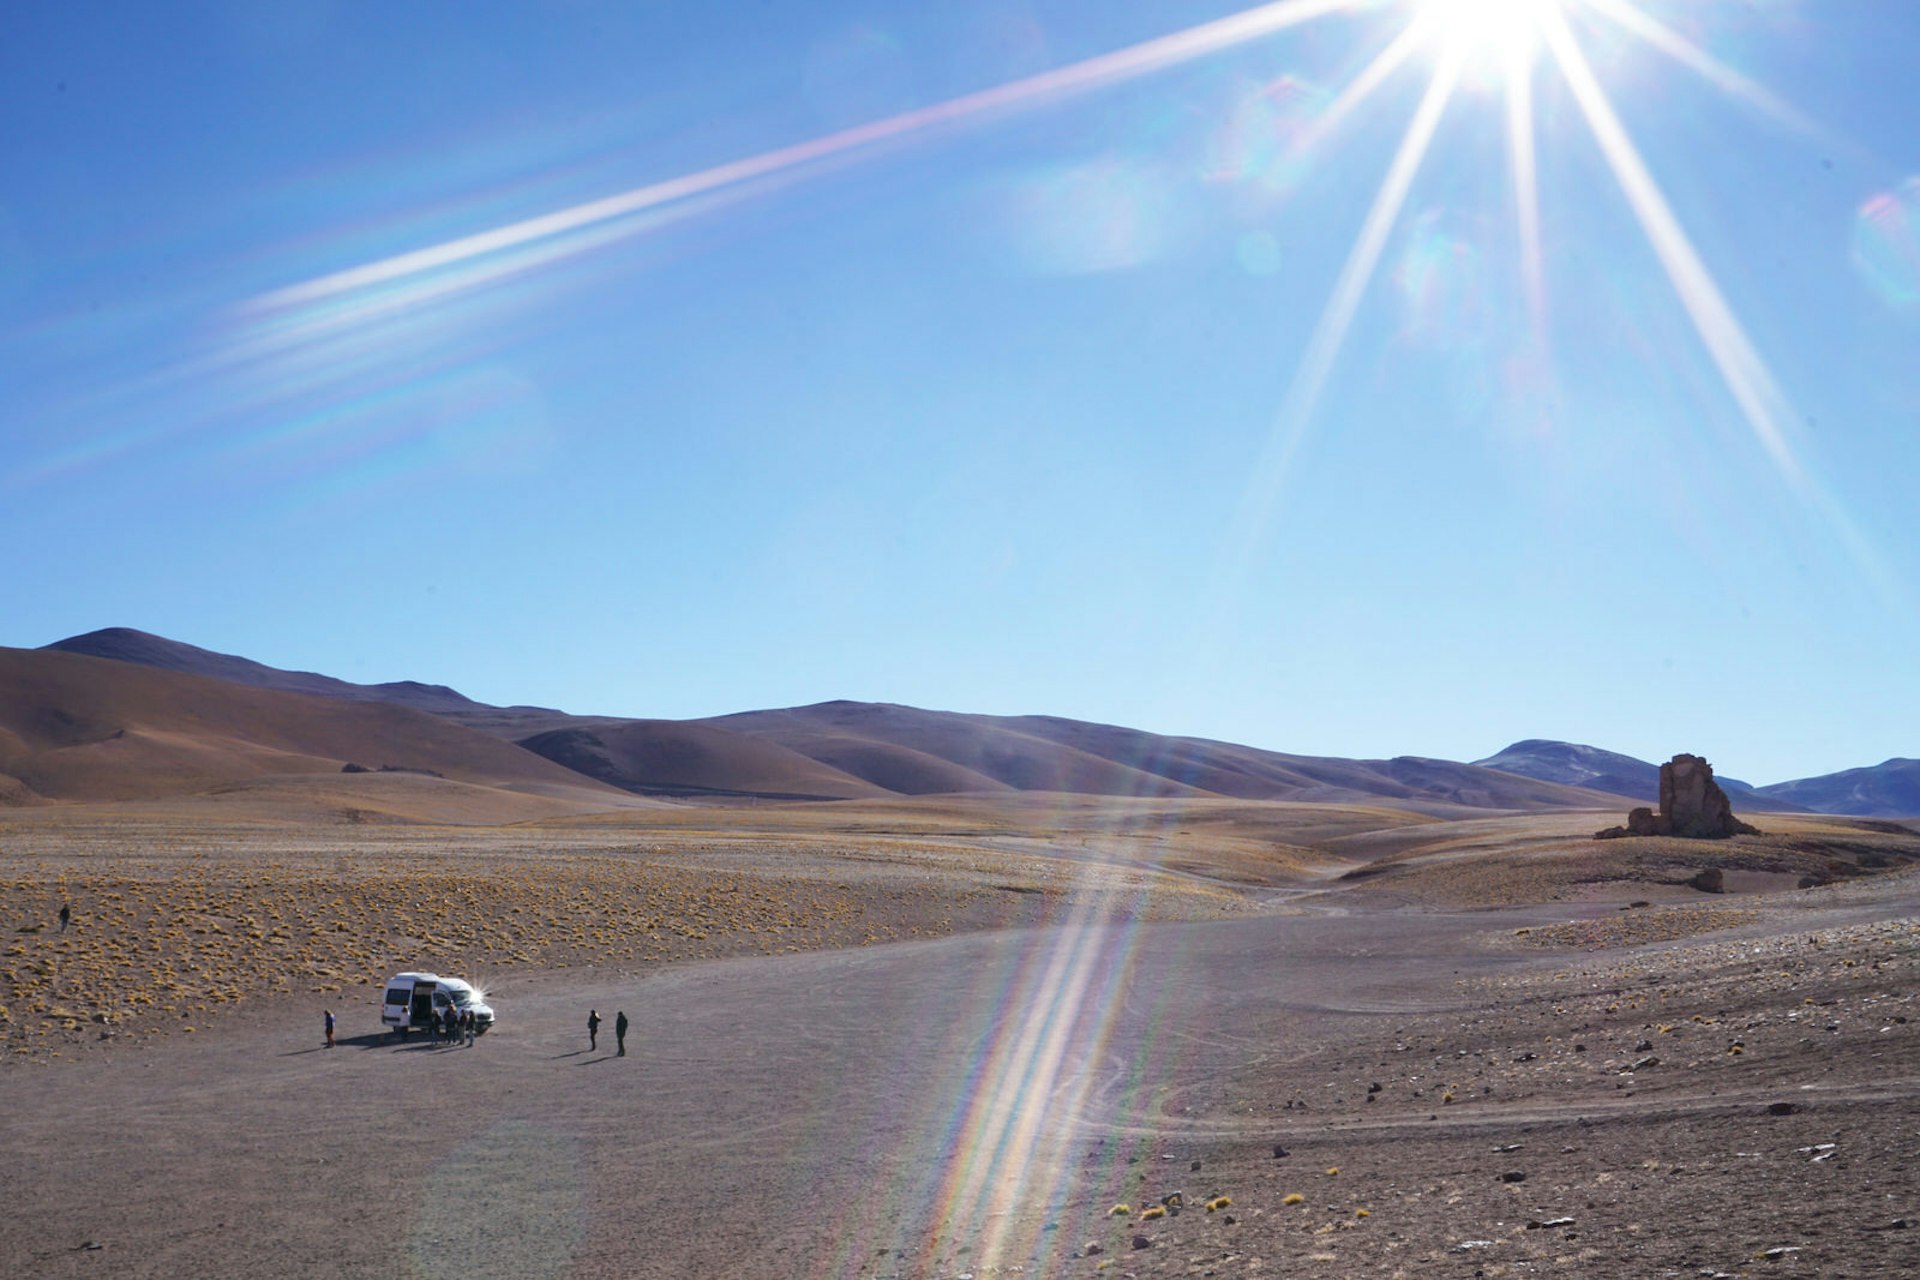 A tour van in the Atacama Desert, Chile